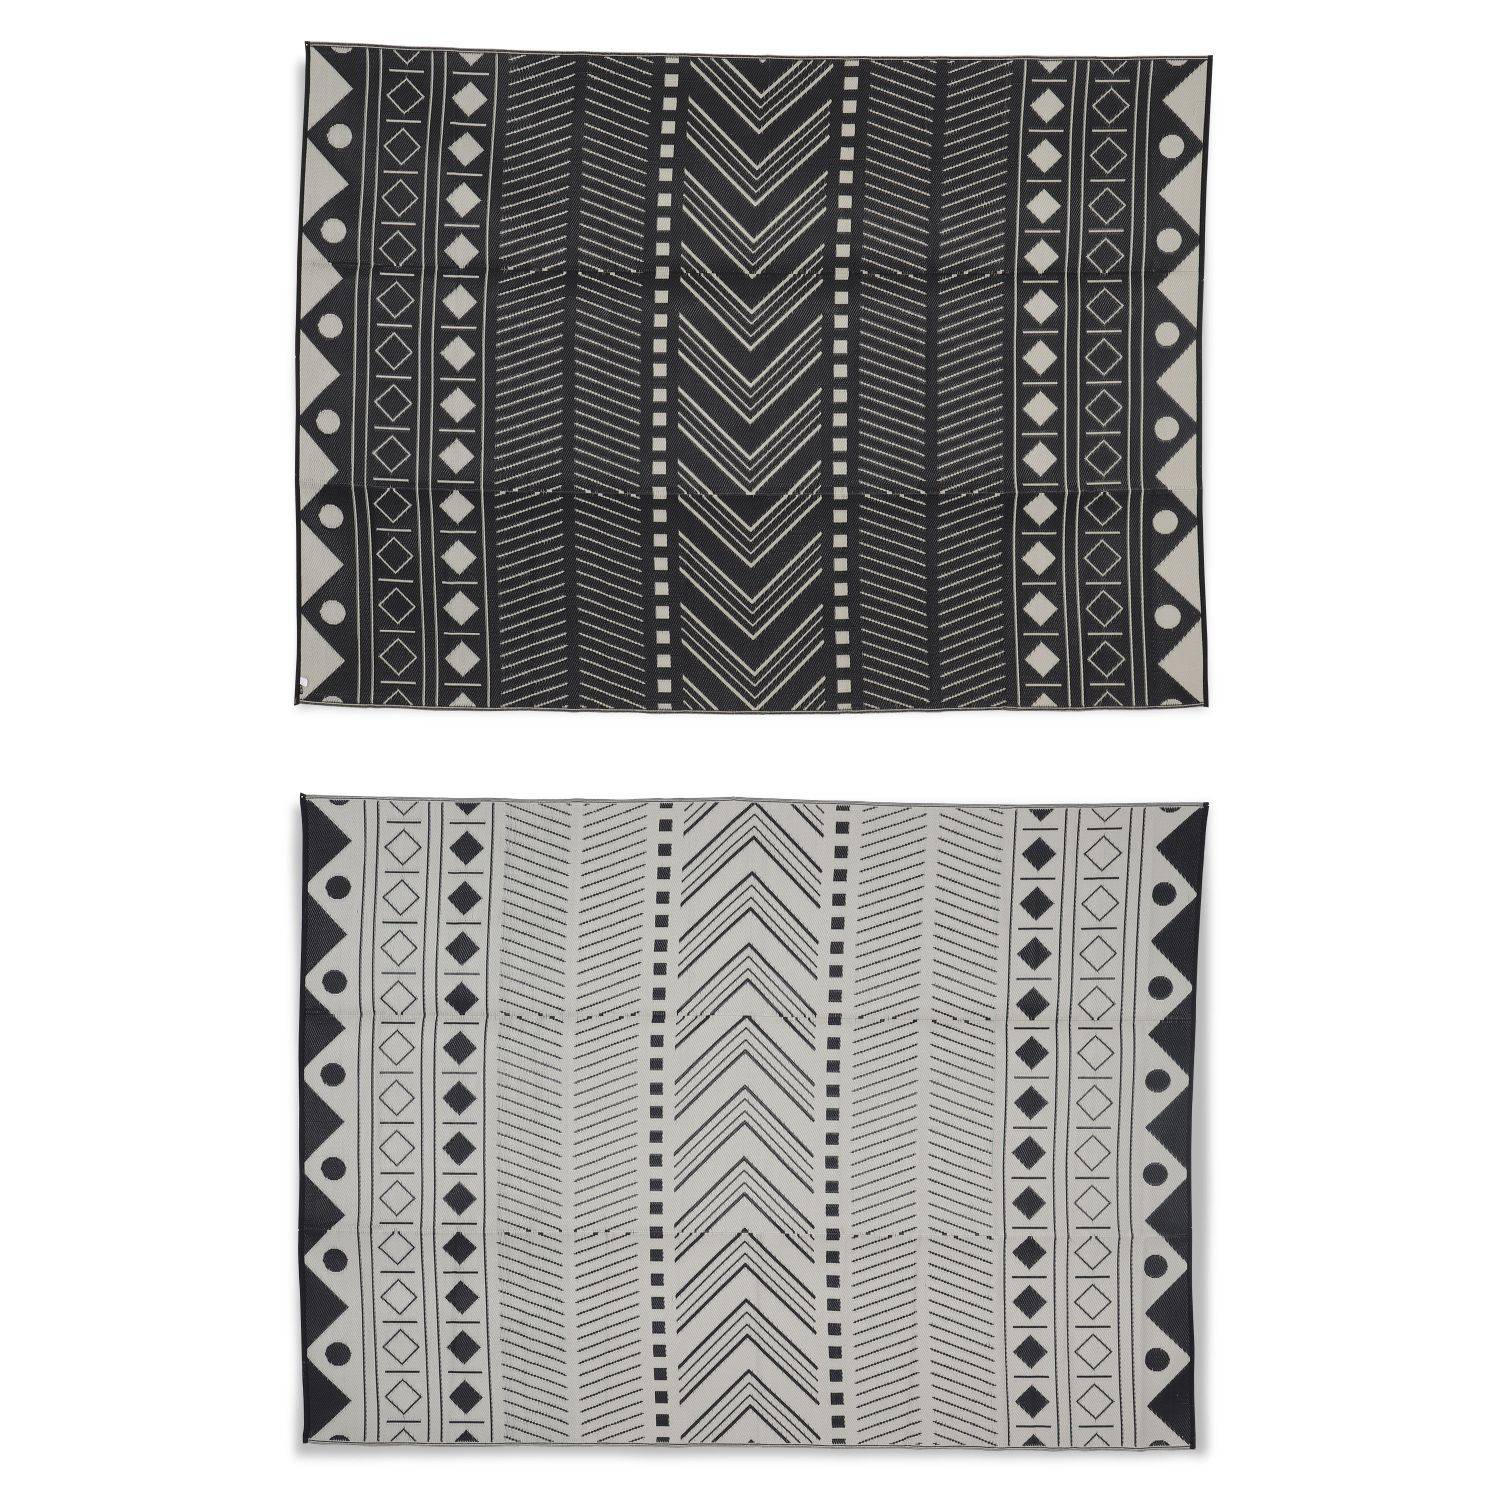 Outdoor rug - 270x360cm - Jacquard, reversible, rectangular, indoor/outdoor use - Bamako - Black-beige Photo2